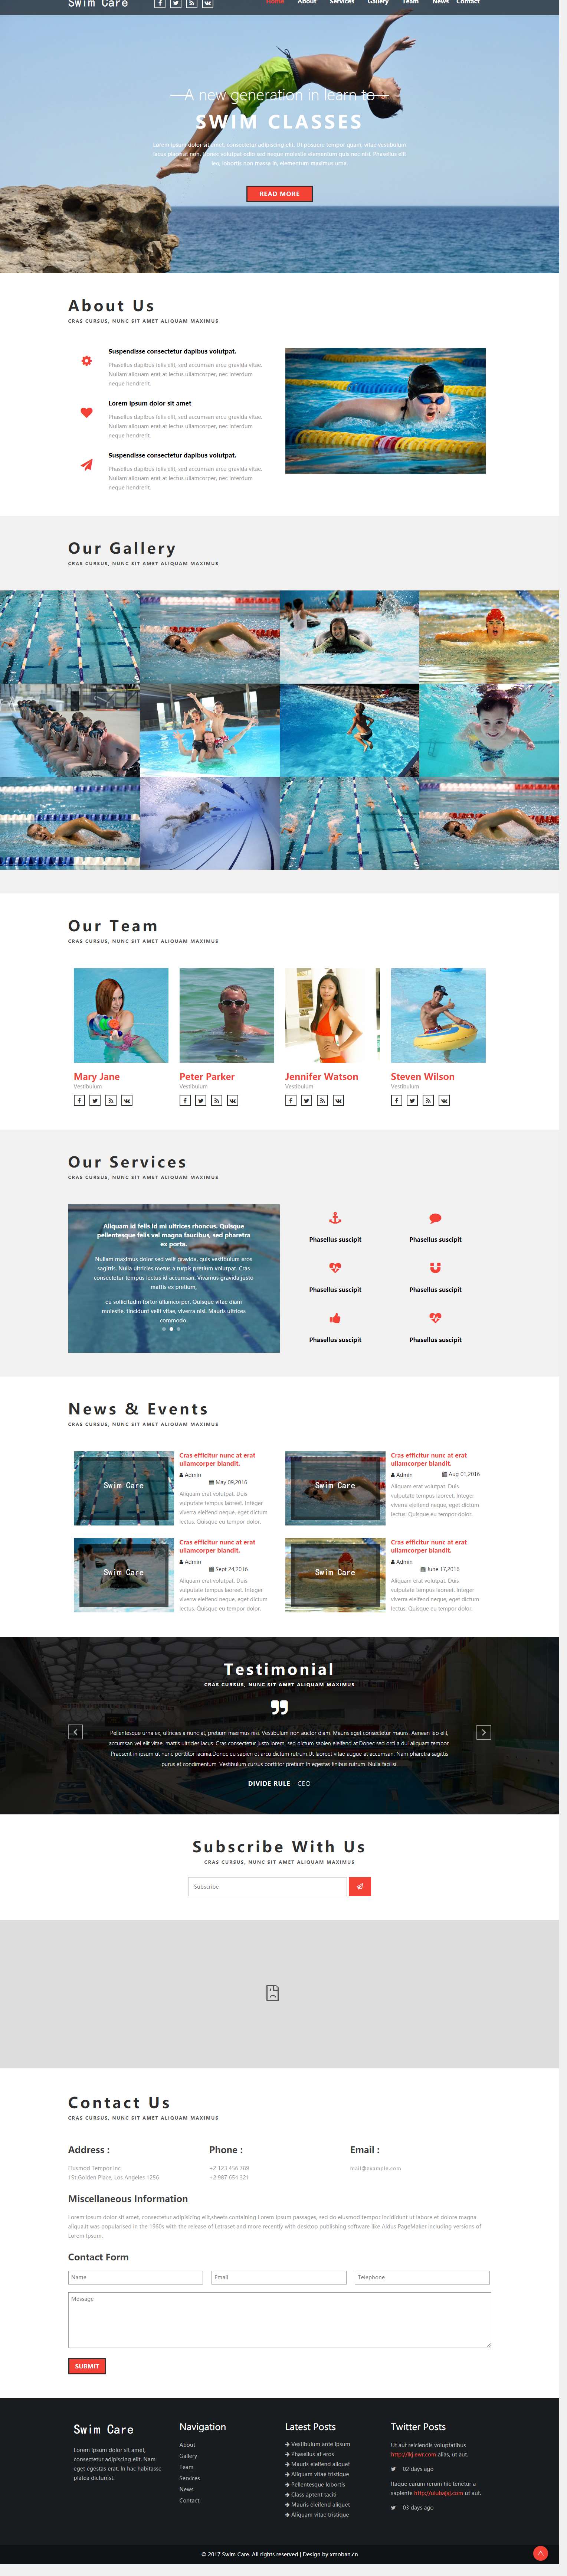 红色欧美风格的跳水运动企业网站源码下载